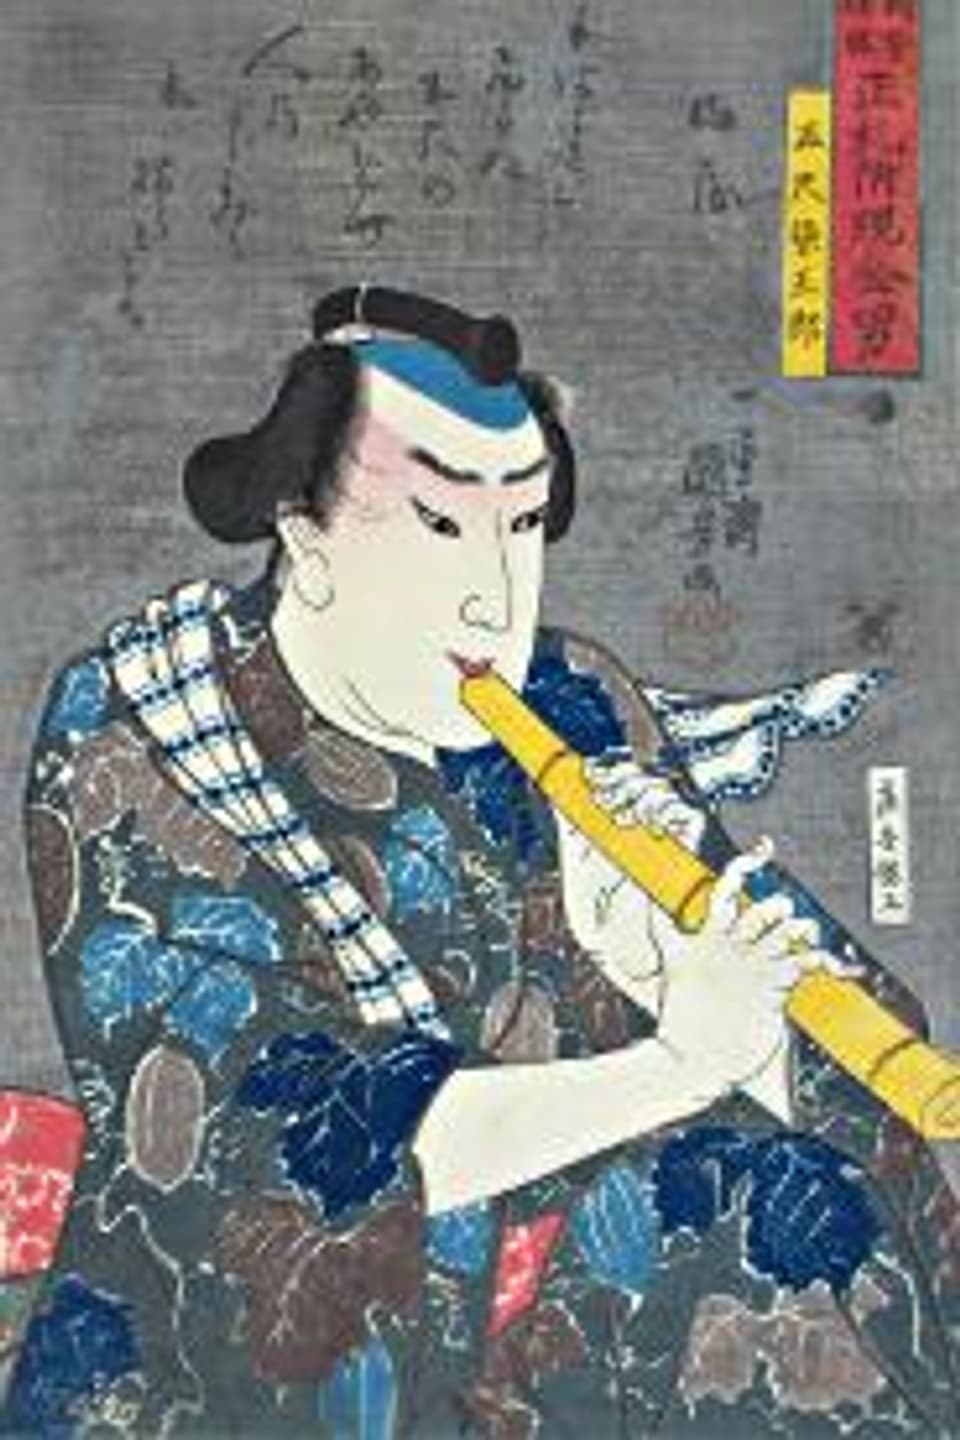 Traditionelle Darstellung eines Shakuhachi Spielers.